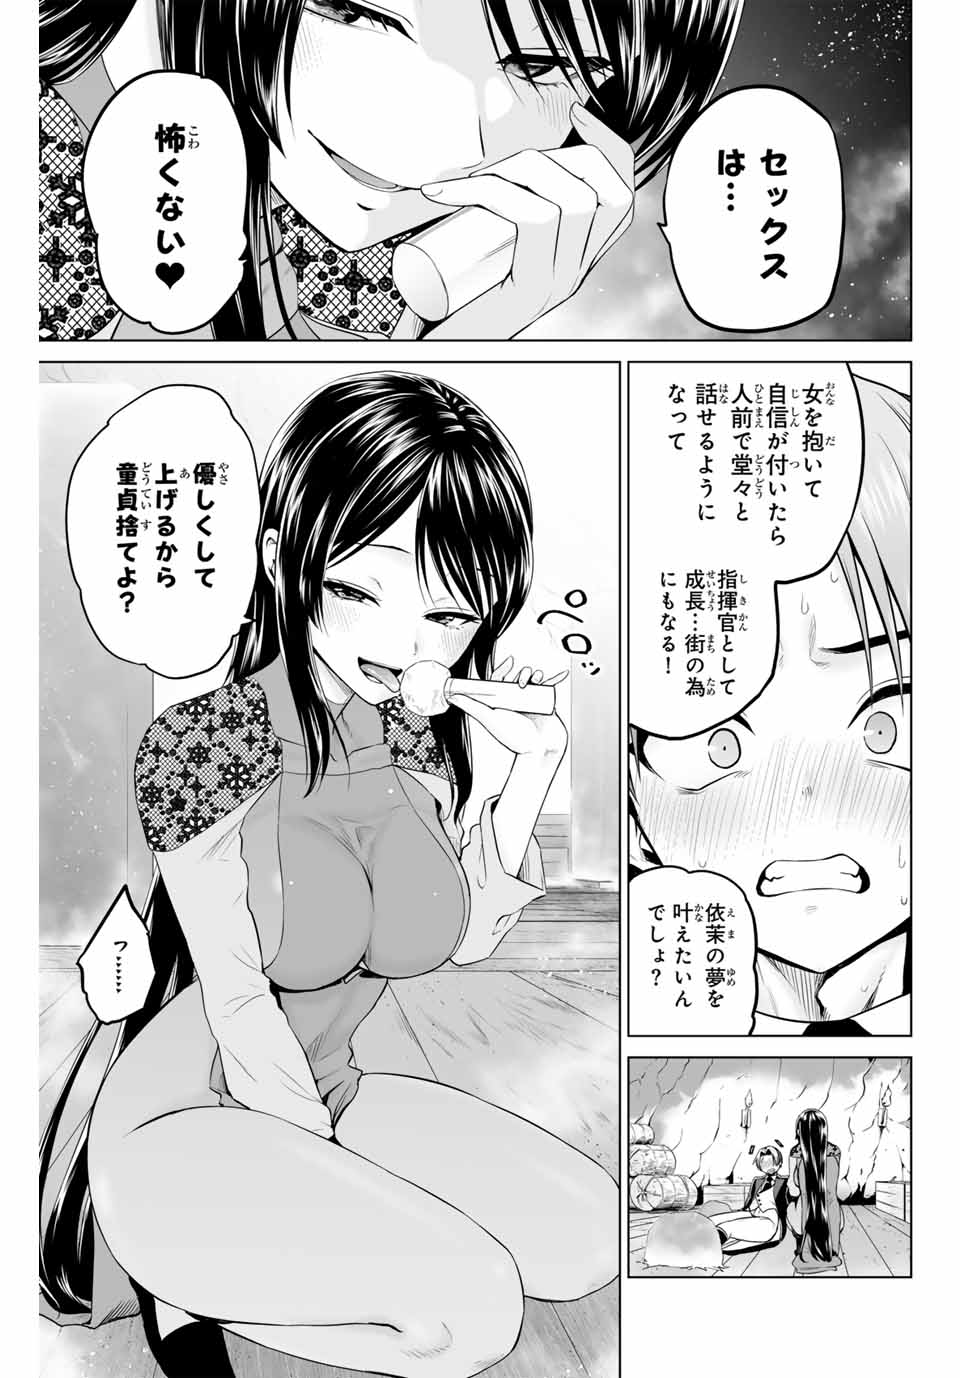 Gunshin No Takuto - Chapter 18 - Page 3